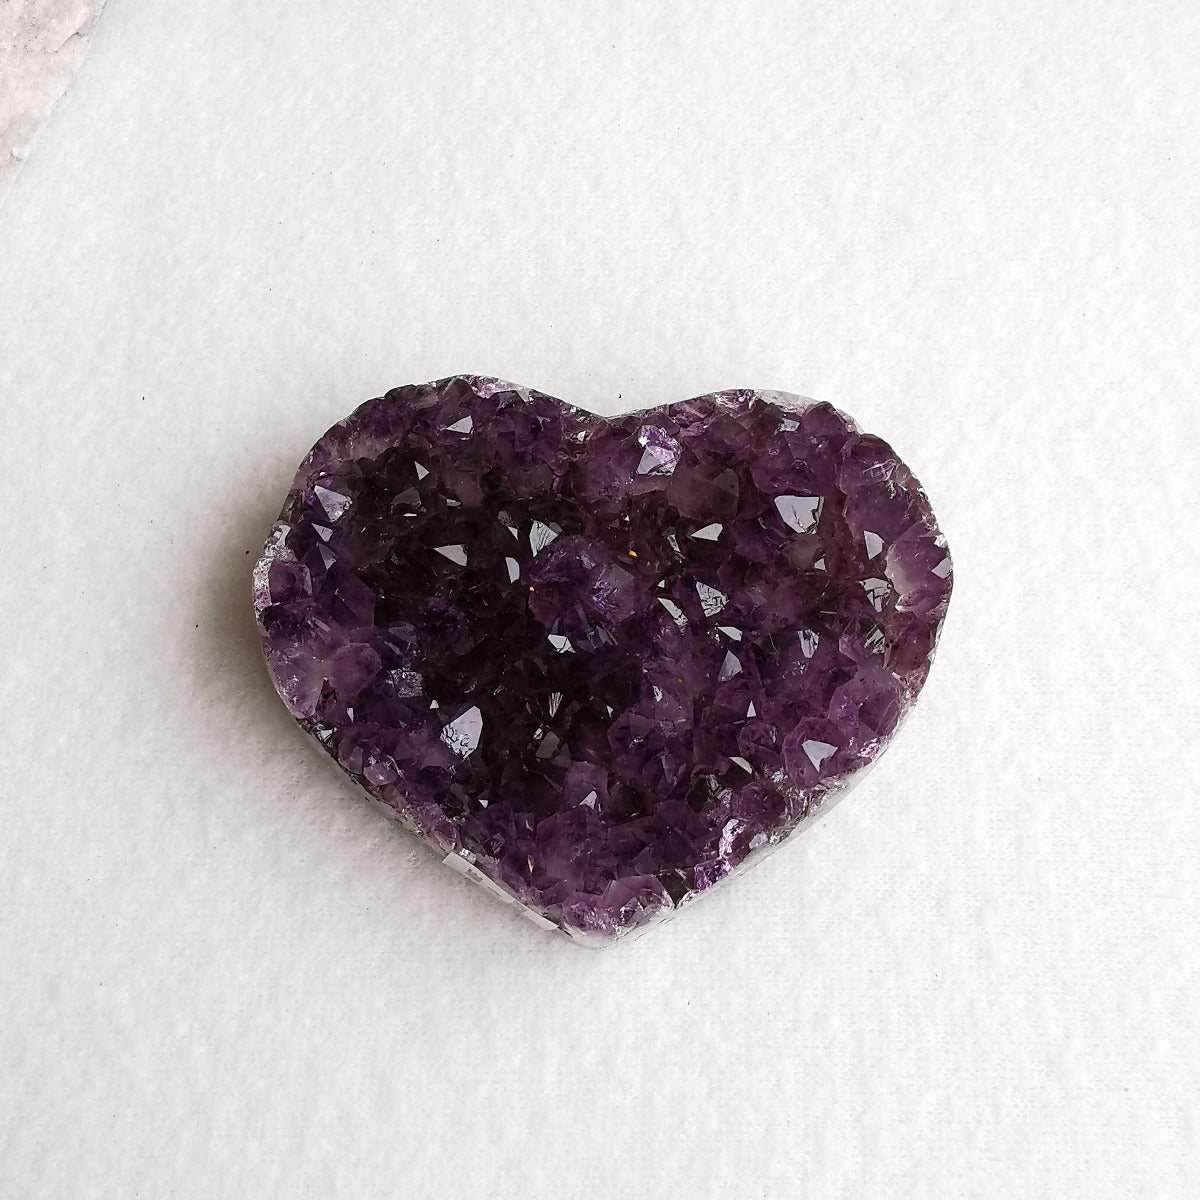 Amethyst krystallhjerte nr. 7- Amethyst Crystal Heart